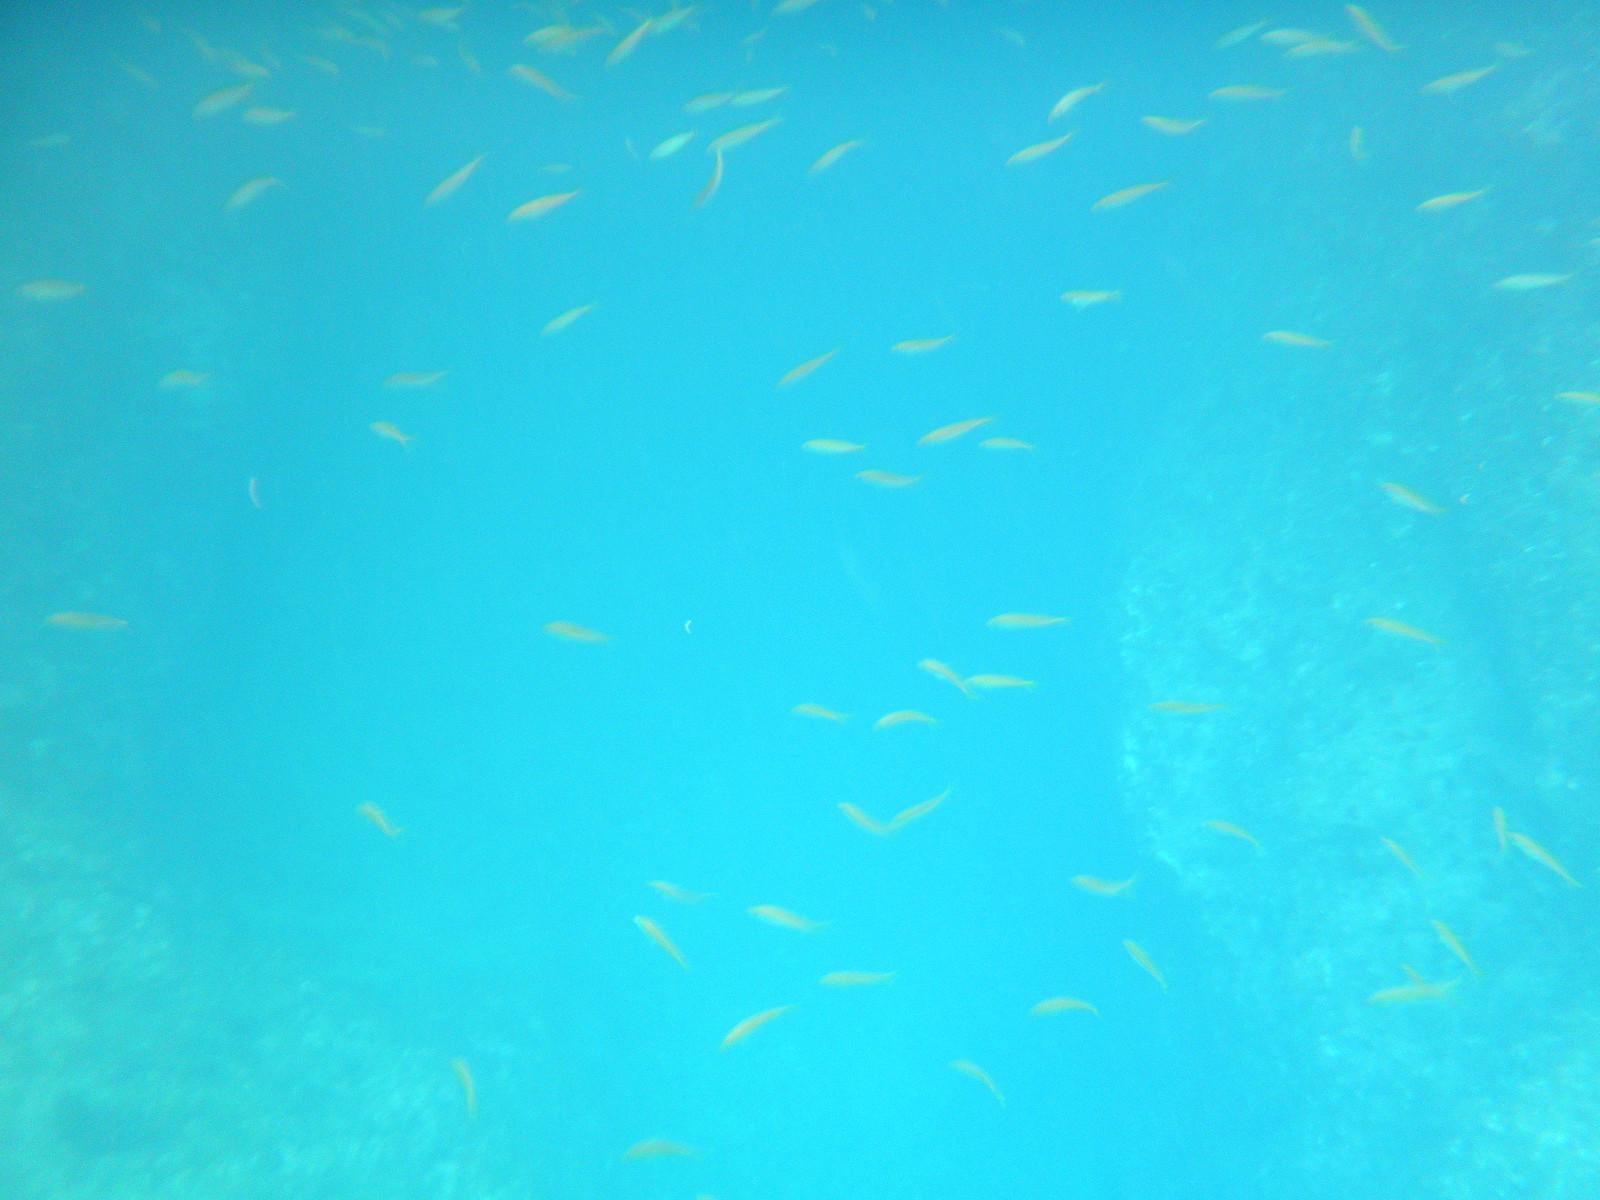 シーカヤックの下にはたくさんのお魚が泳いでいます